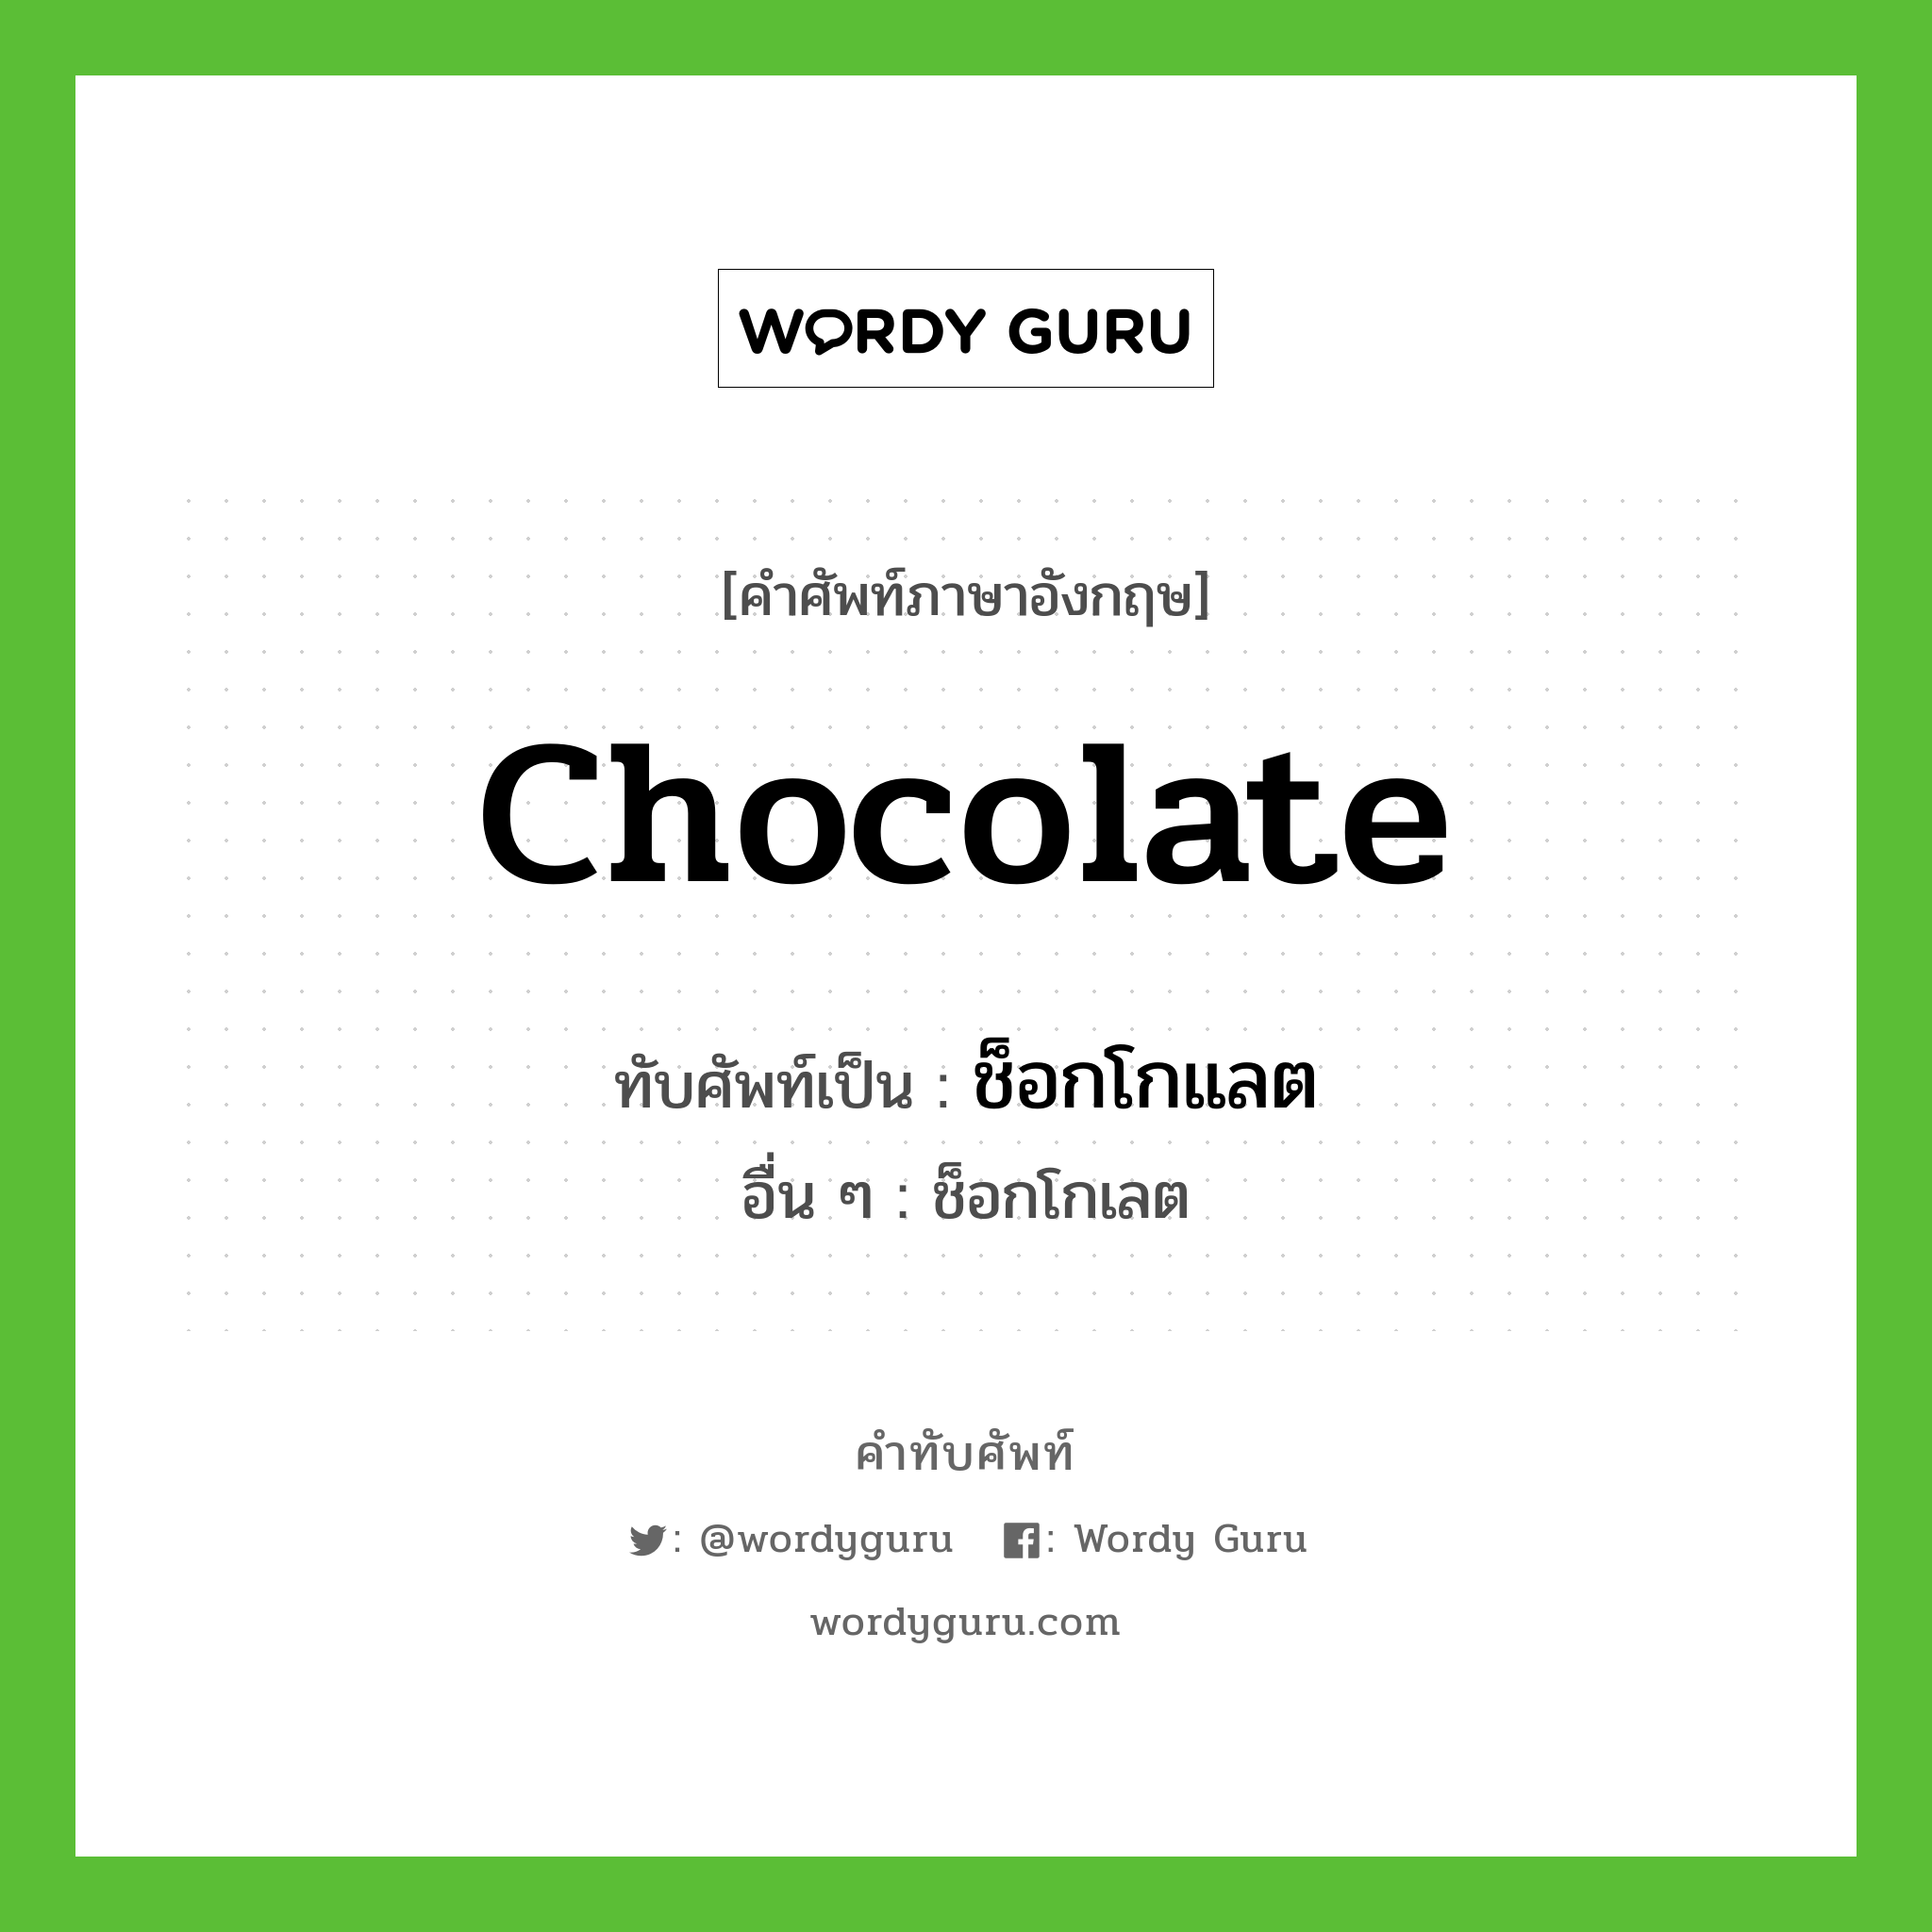 chocolate เขียนเป็นคำไทยว่าอะไร?, คำศัพท์ภาษาอังกฤษ chocolate ทับศัพท์เป็น ช็อกโกแลต อื่น ๆ ช็อกโกเลต